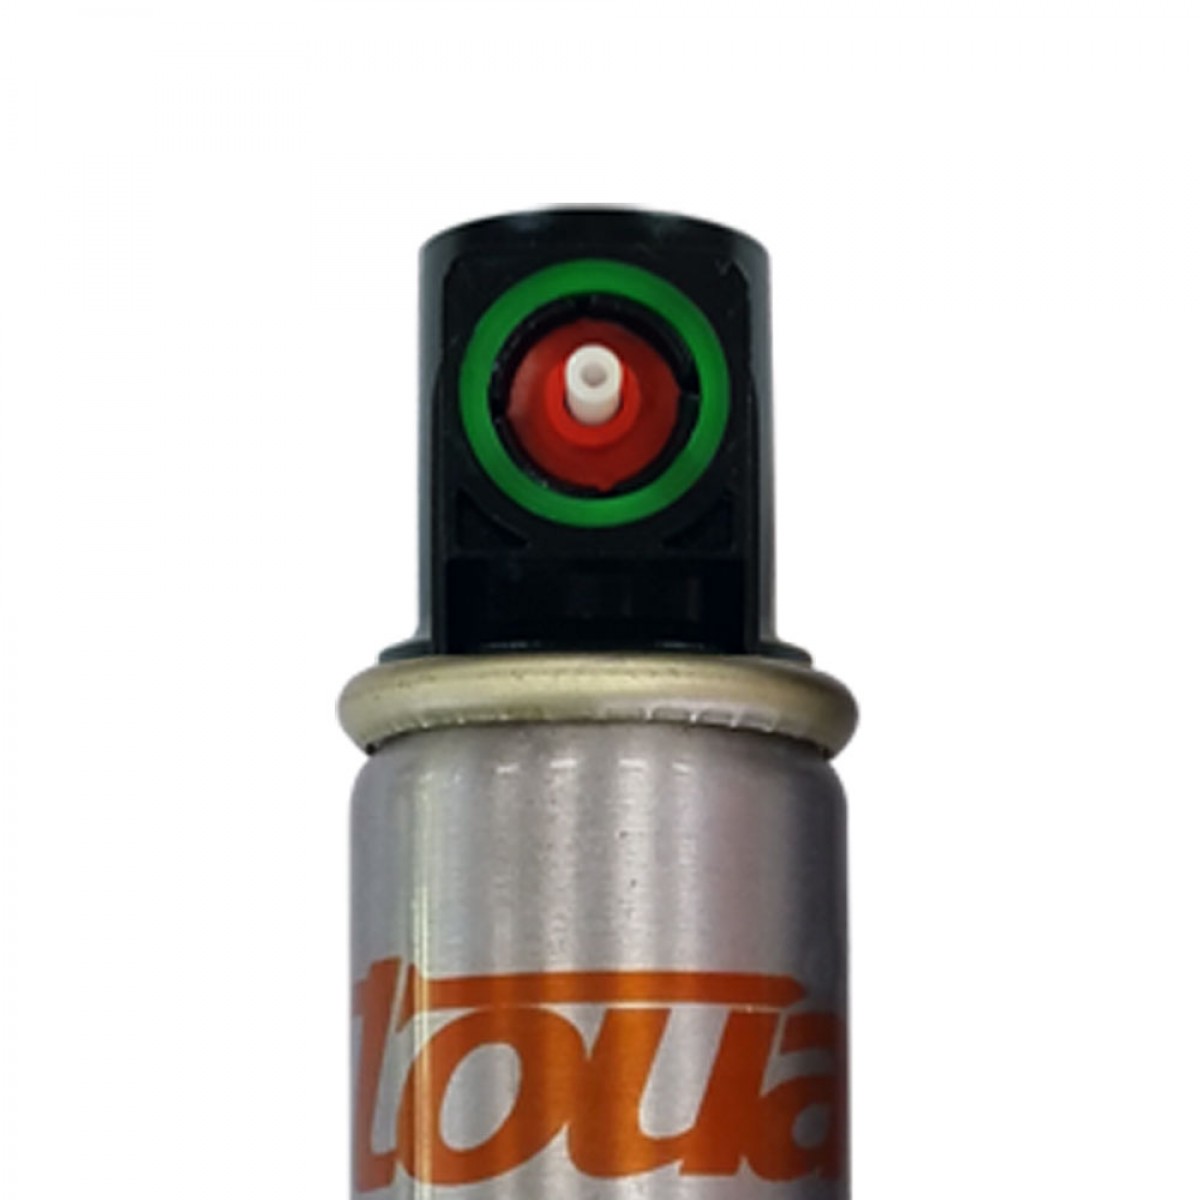 Фото Газовый баллон Toua с зелёным клапаном 165 мм в интернет-магазине ToolHaus.ru